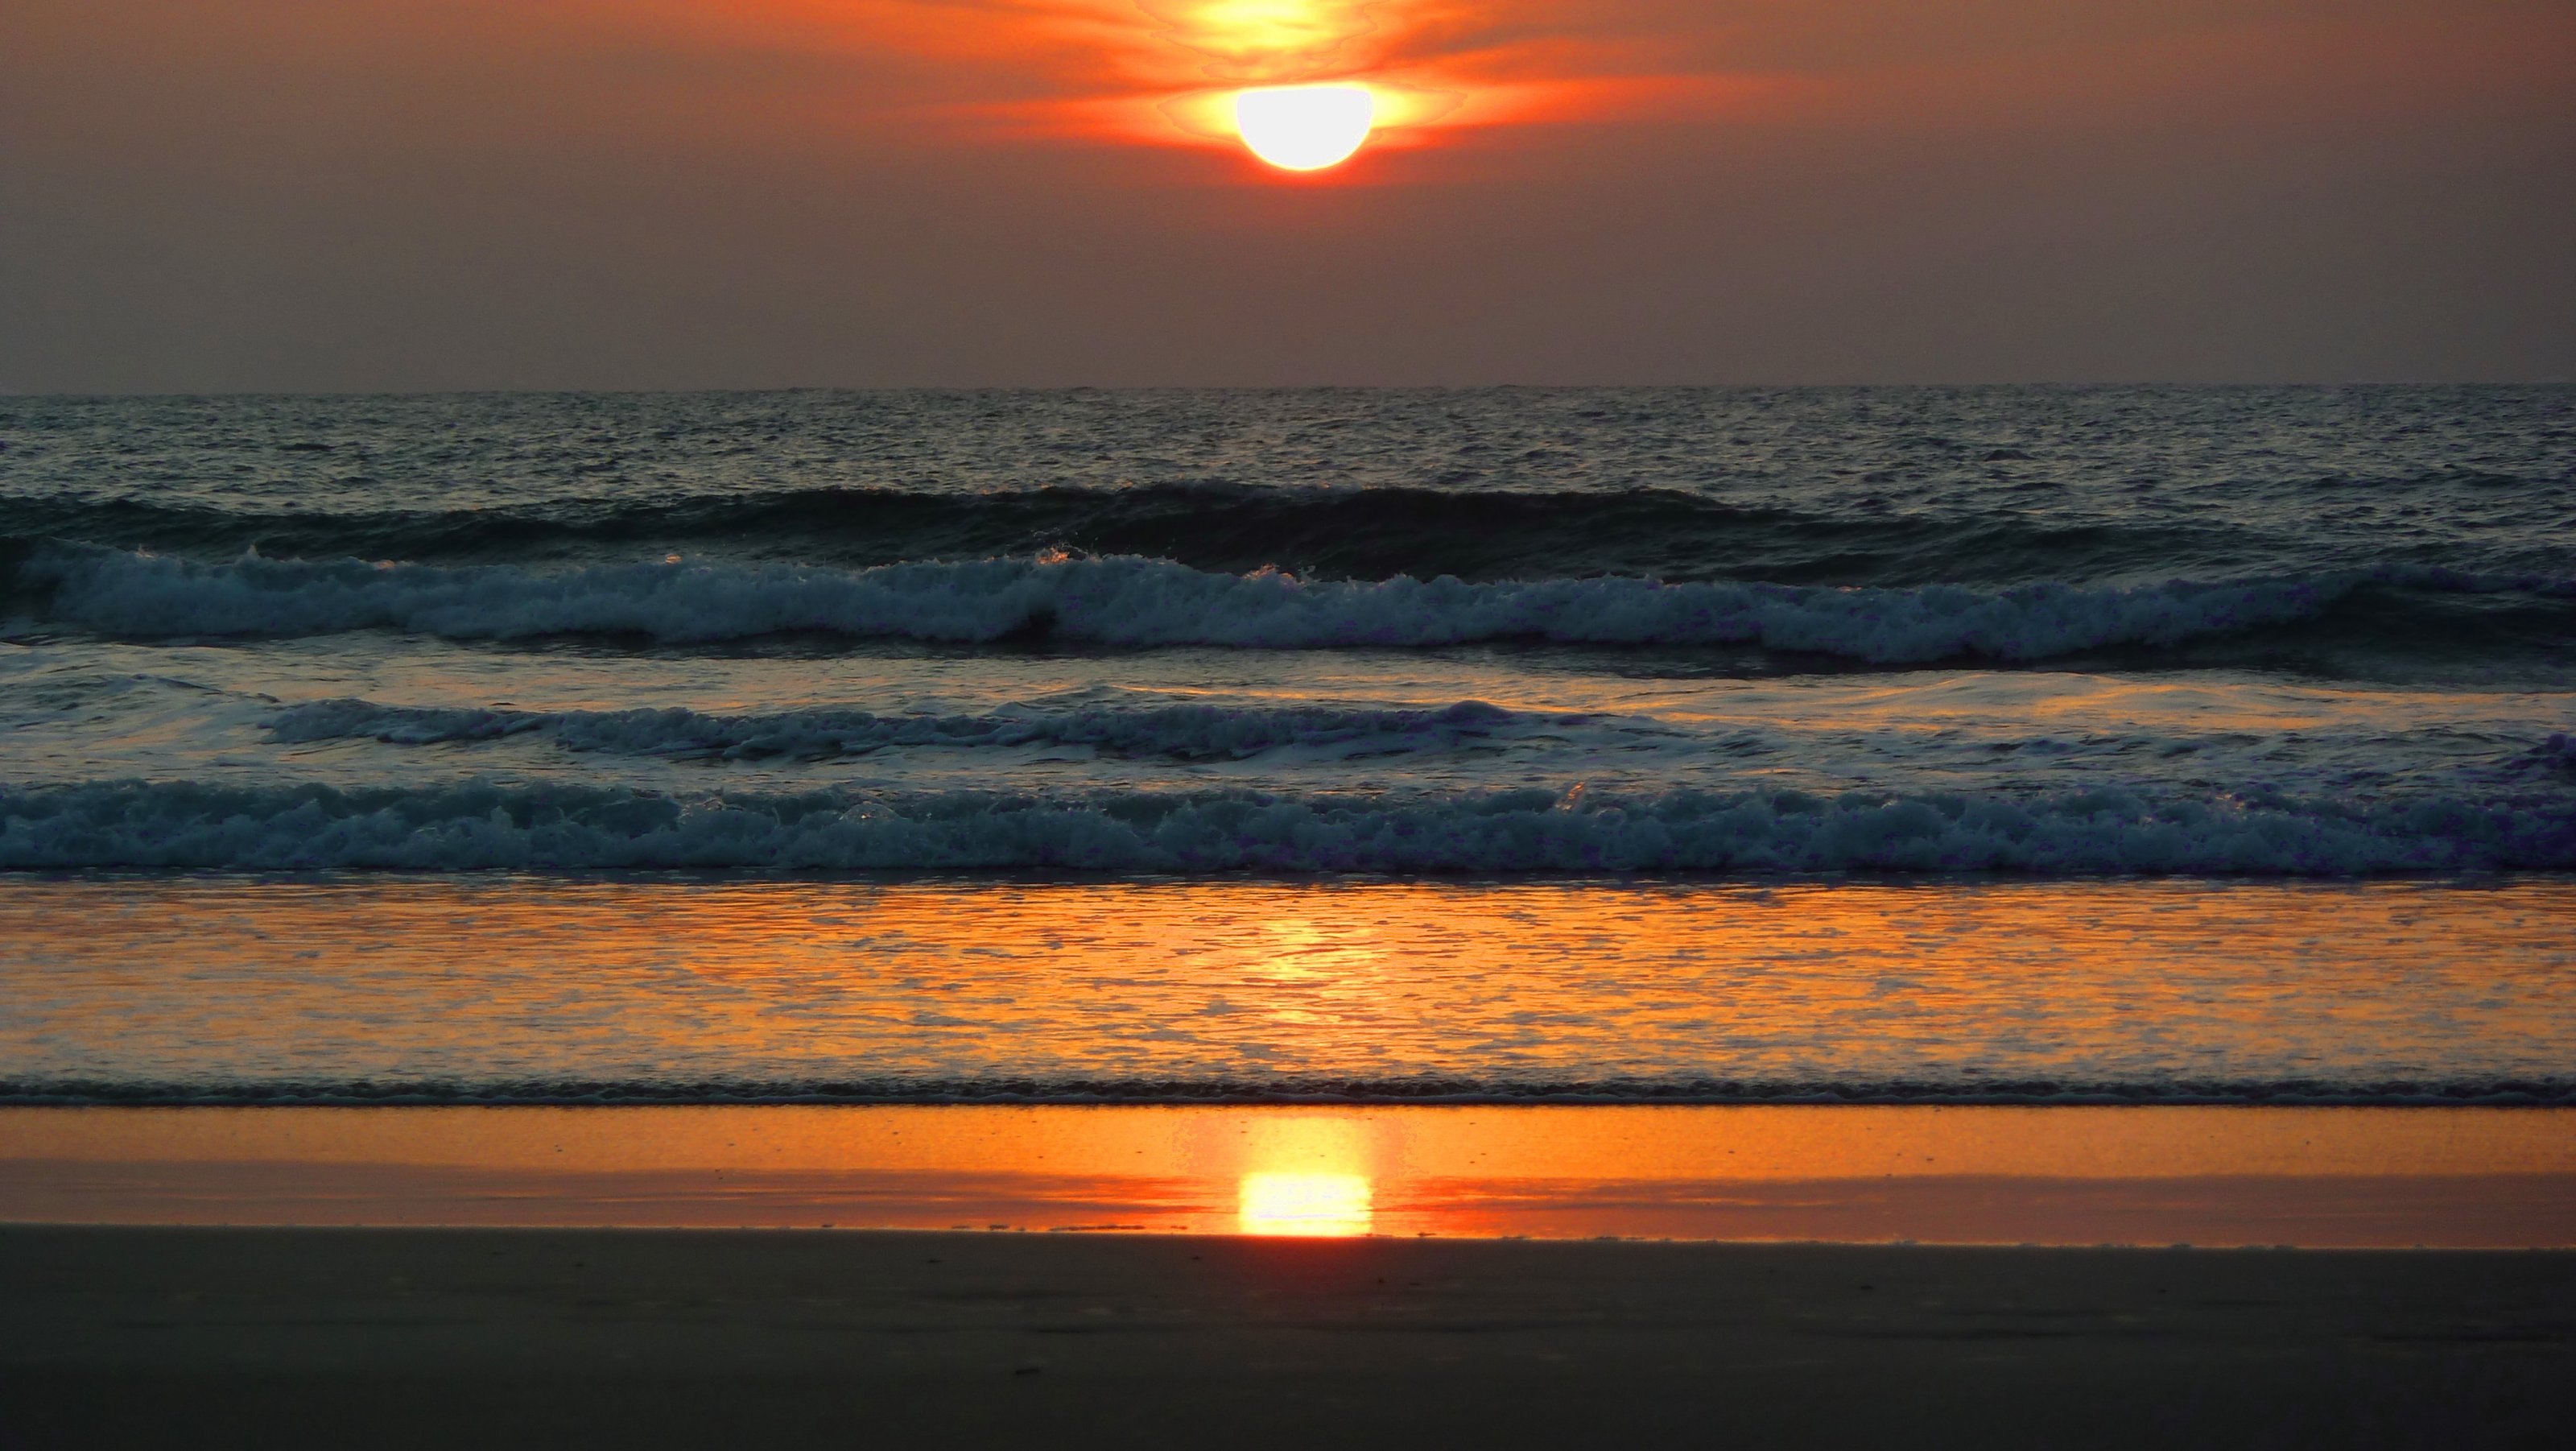 Sonnenuntergang Golf von Bengalen.jpg